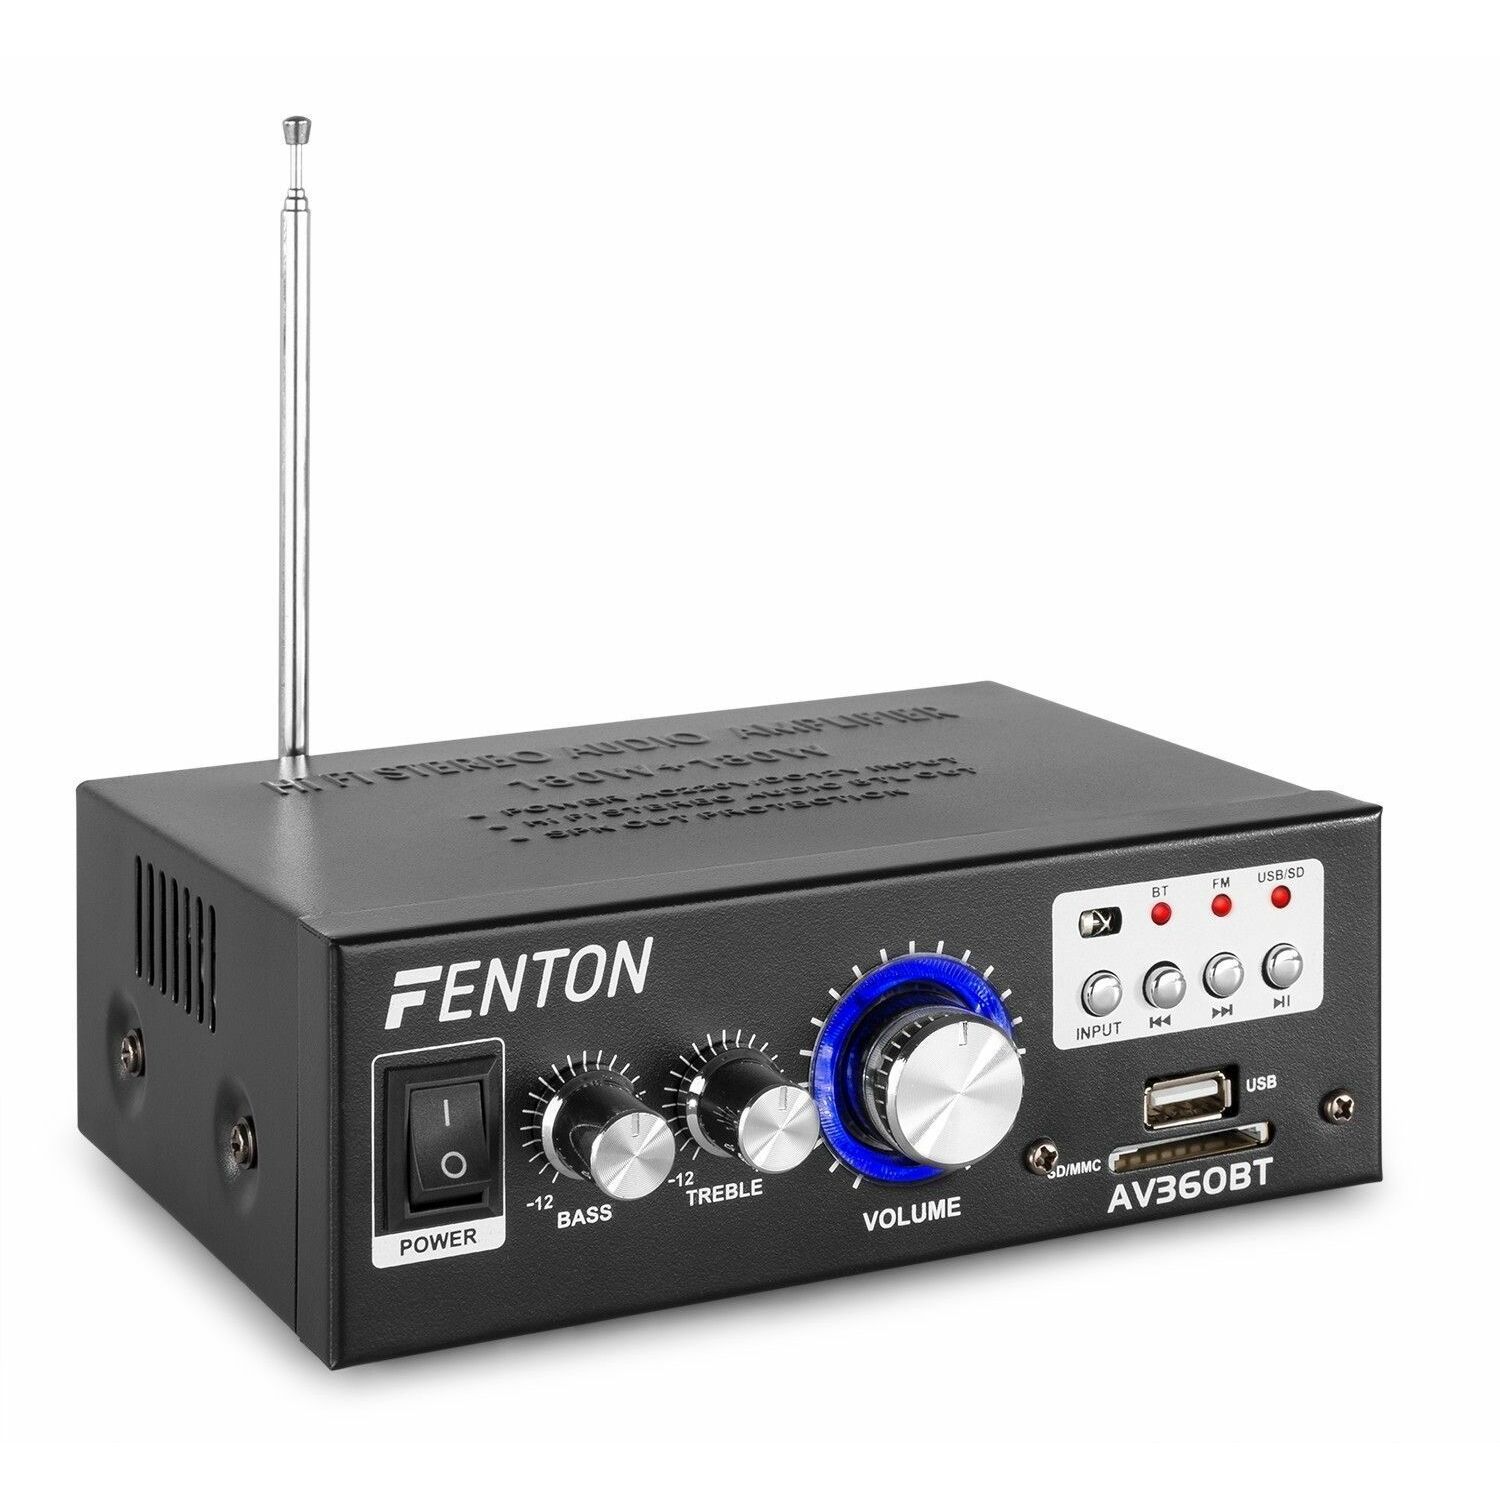 Retourdeal - Fenton AV360BT versterker met Bluetooth en USB/SD mp3